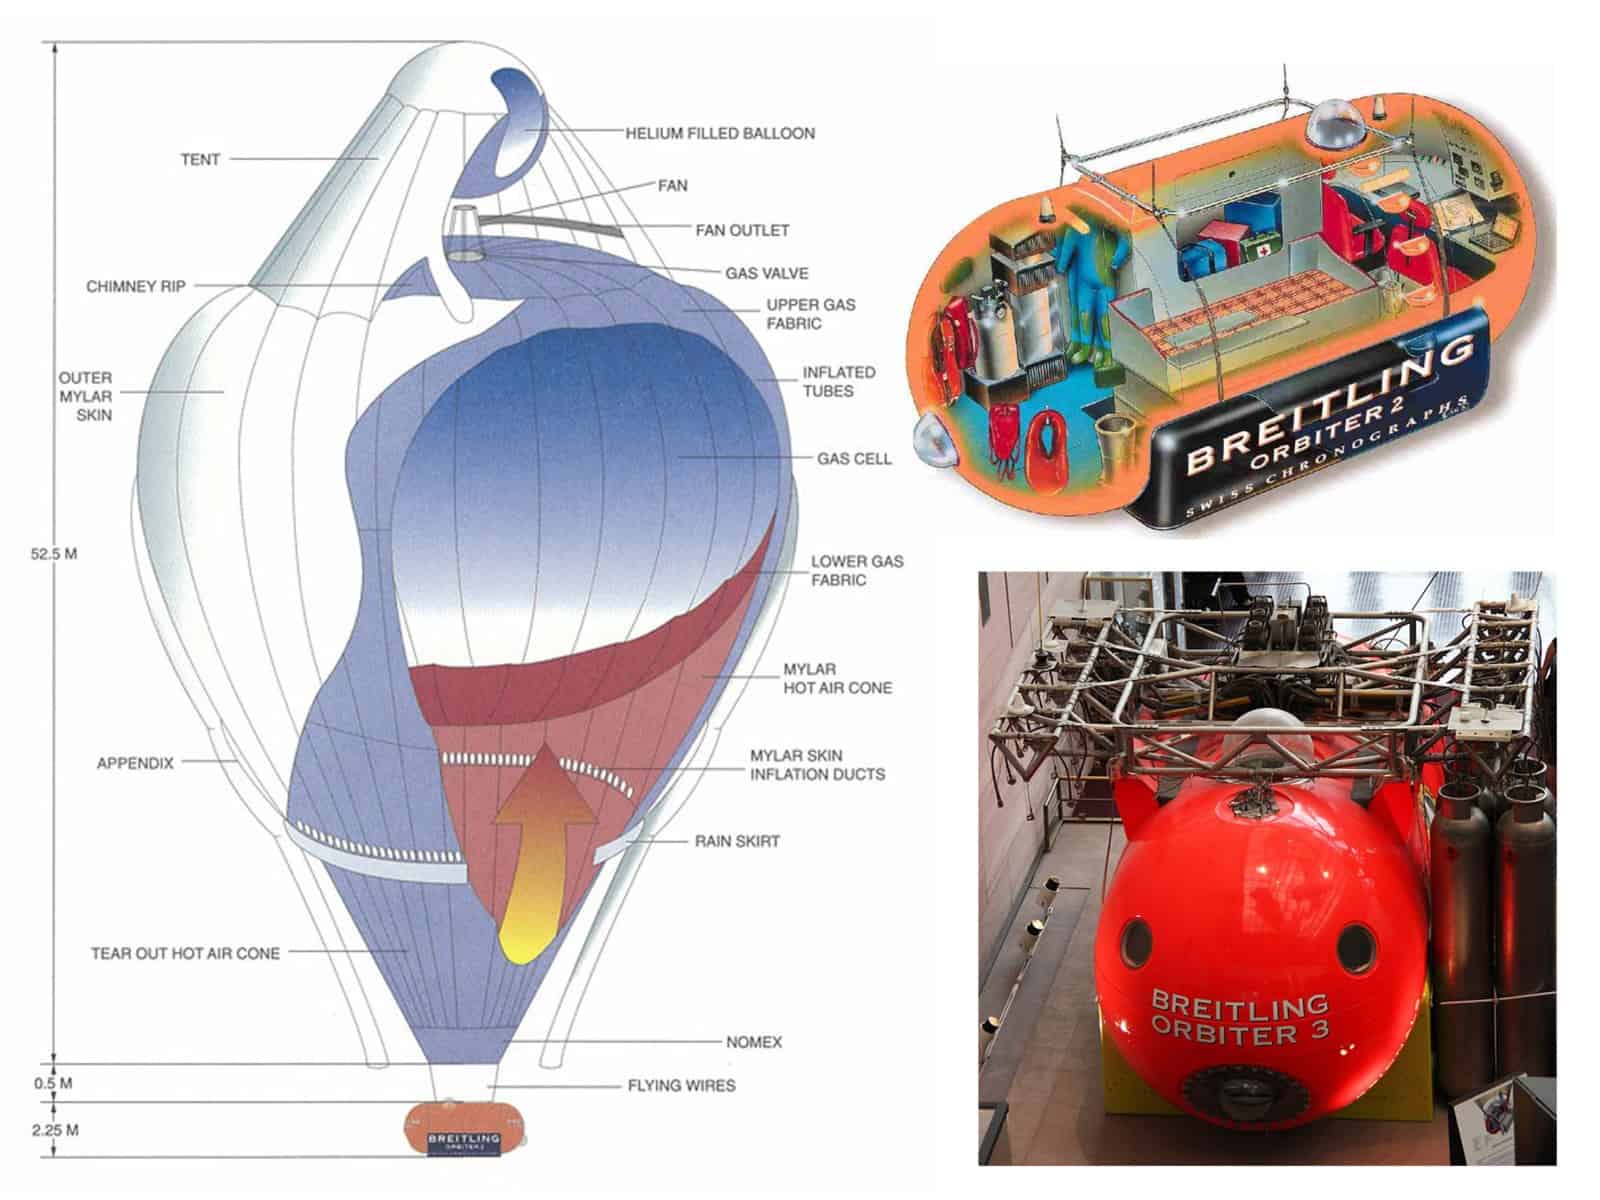 Aufbau der Heißluft-Helumballons sowie der Kapsel mit dem Gerüst für die Gasbehälter